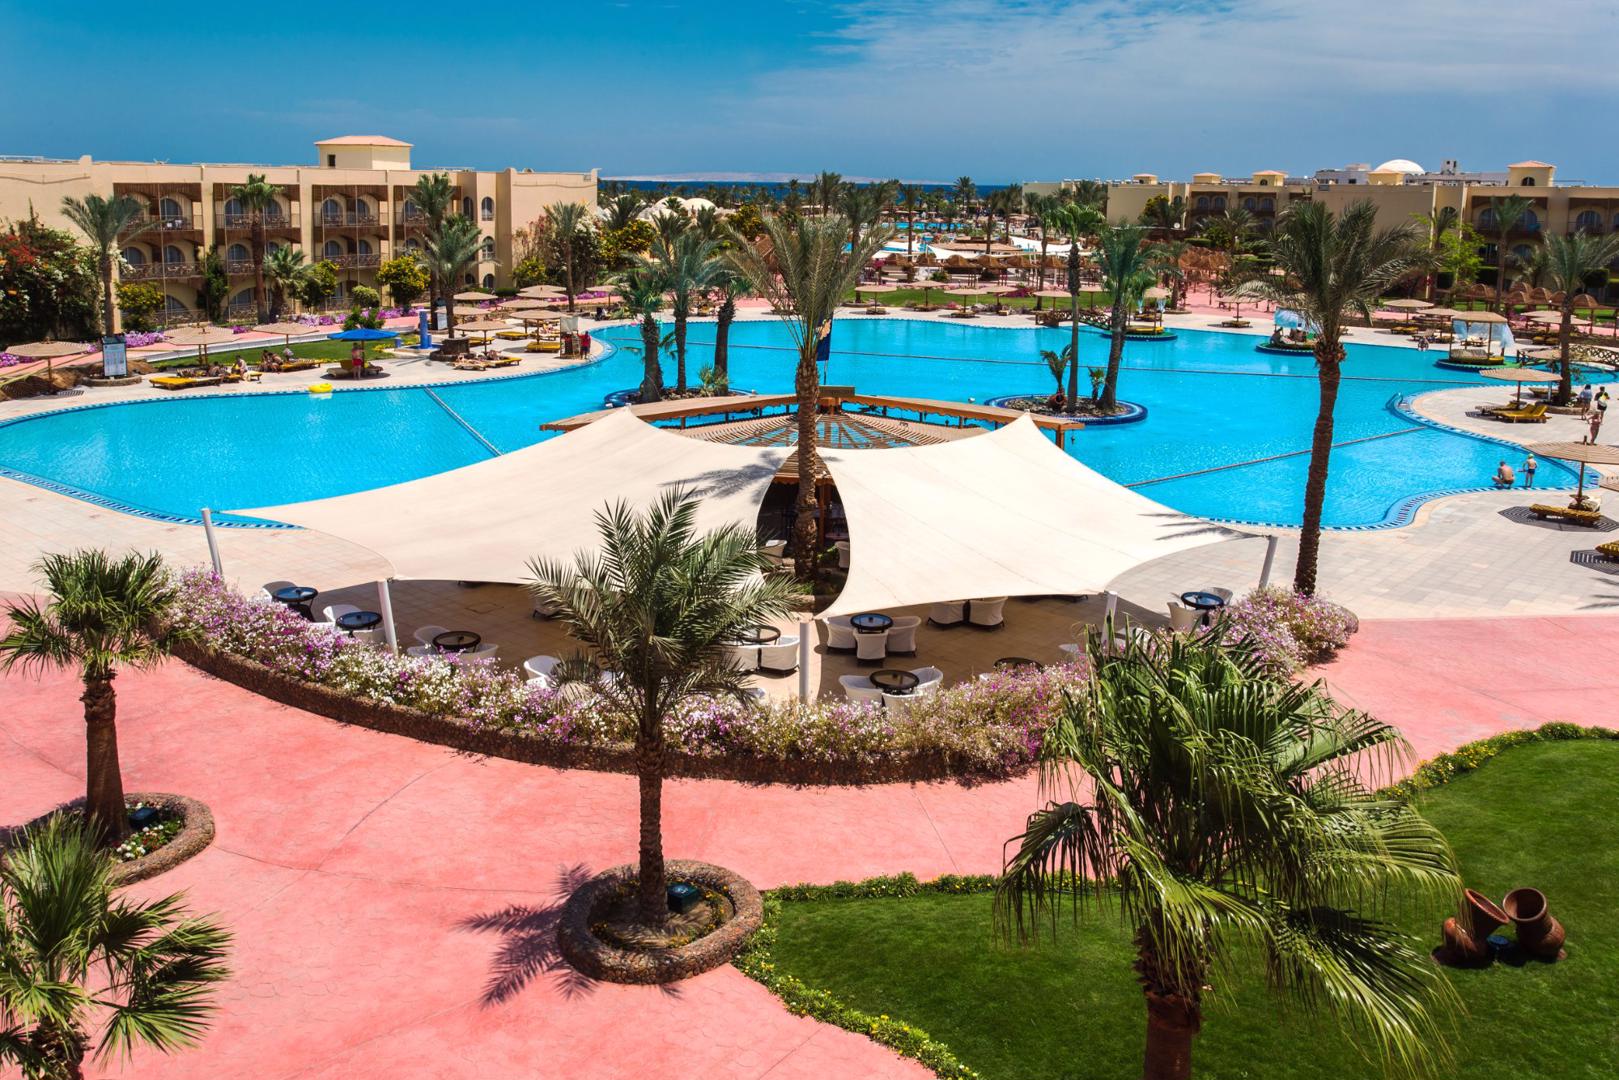 Desert Rose - Hurghada - Egypte